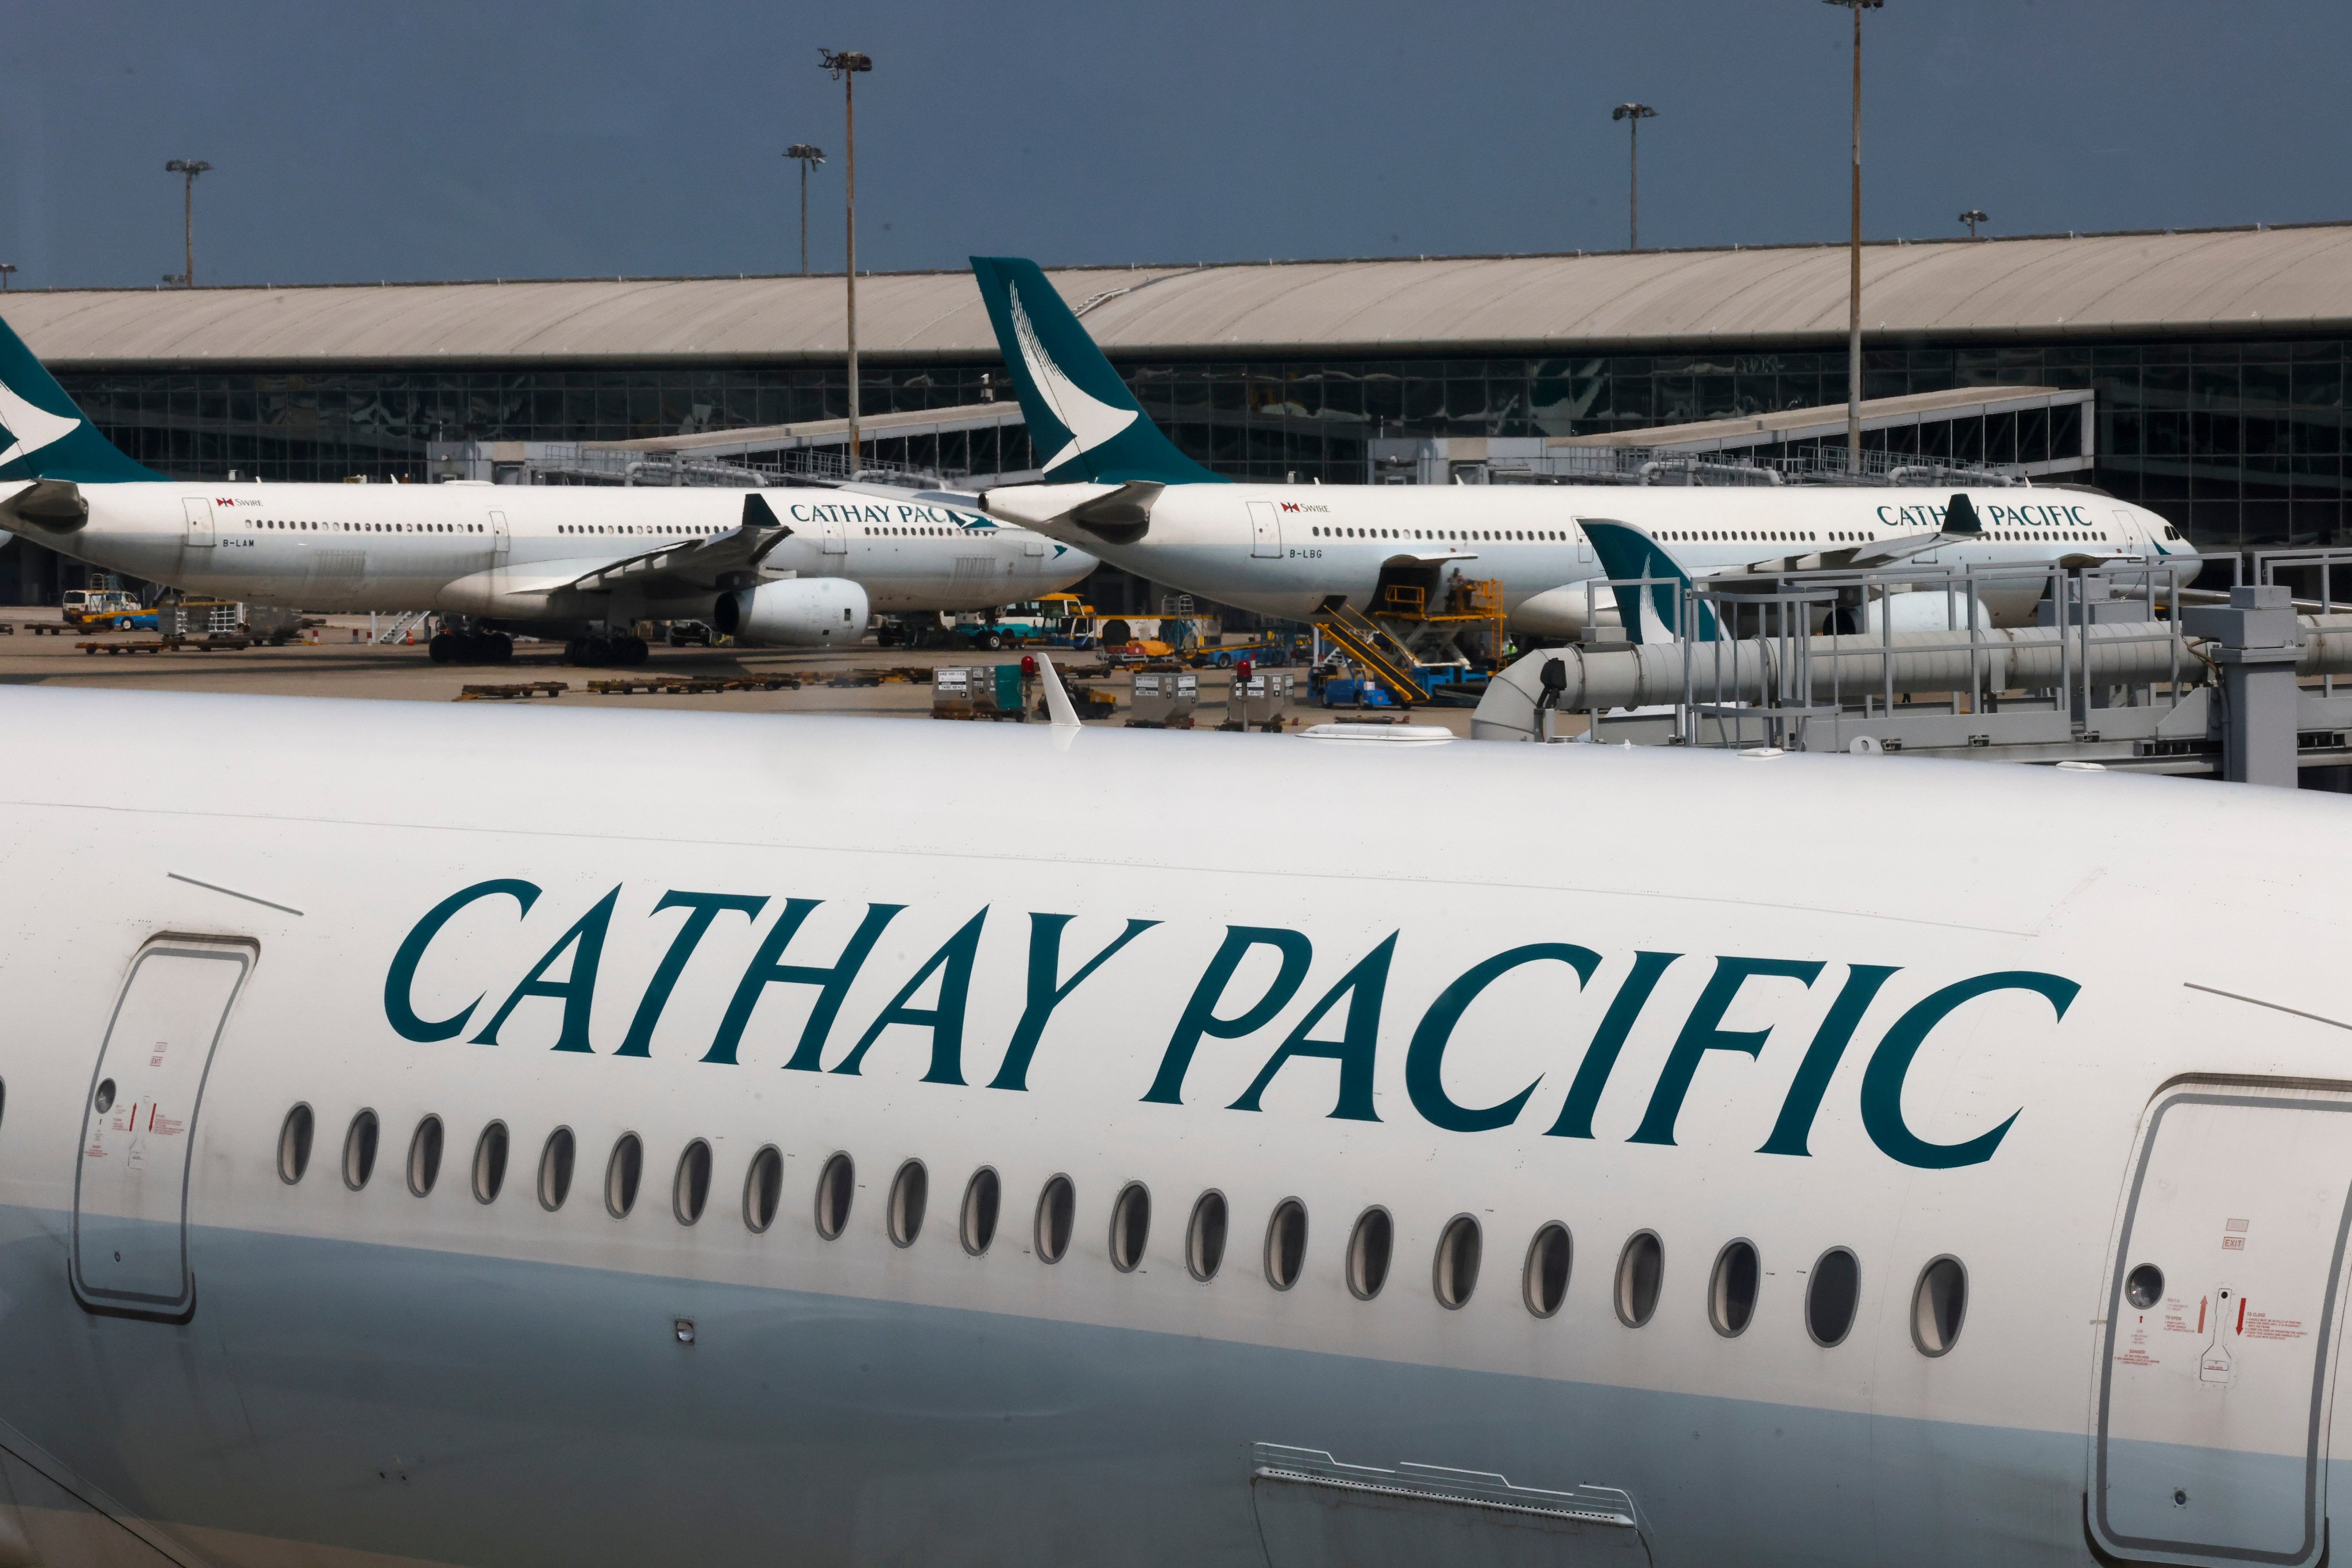 Cathay Pacific planes at Hong Kong International Airport. Photo: Jonathan Wong